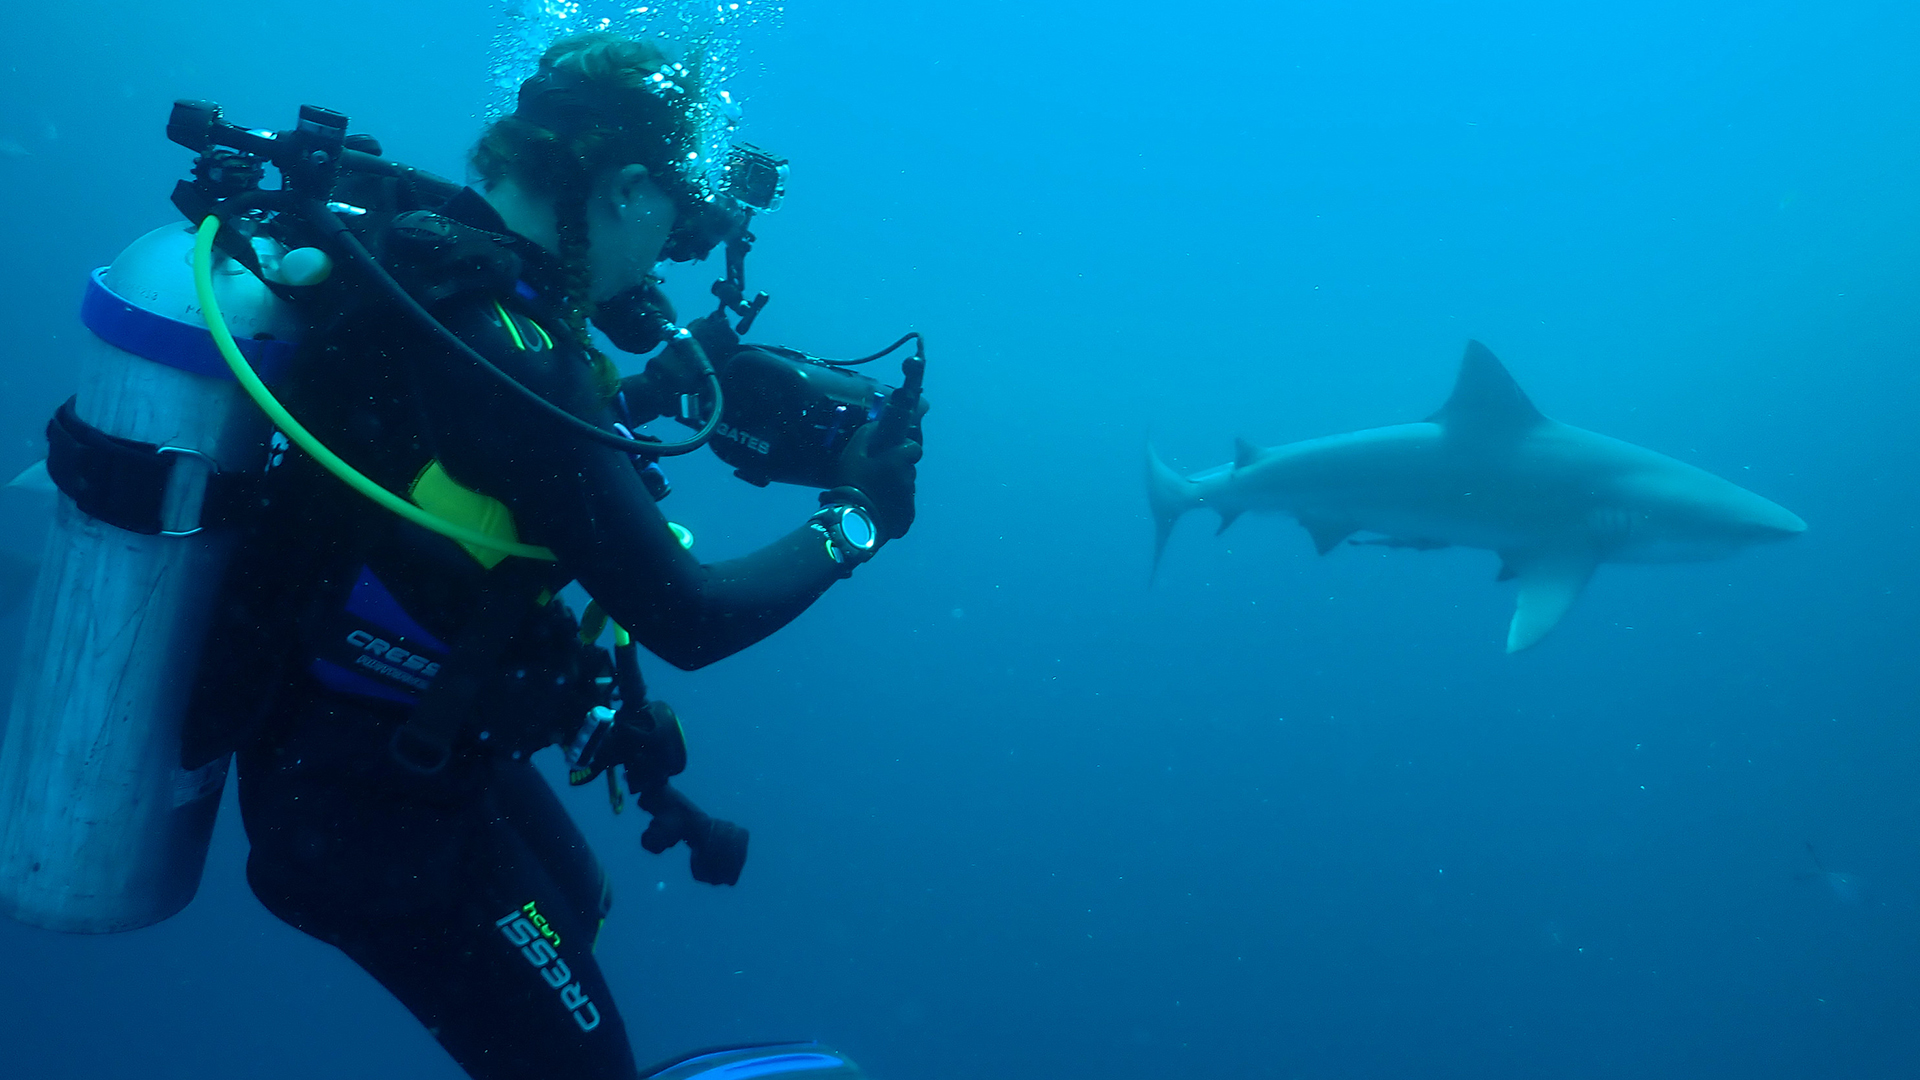 سارة كاساريتو تصور أسماء القرش تحت الماء. هذه الصورة... [Photo of the day - يوليو 2022]